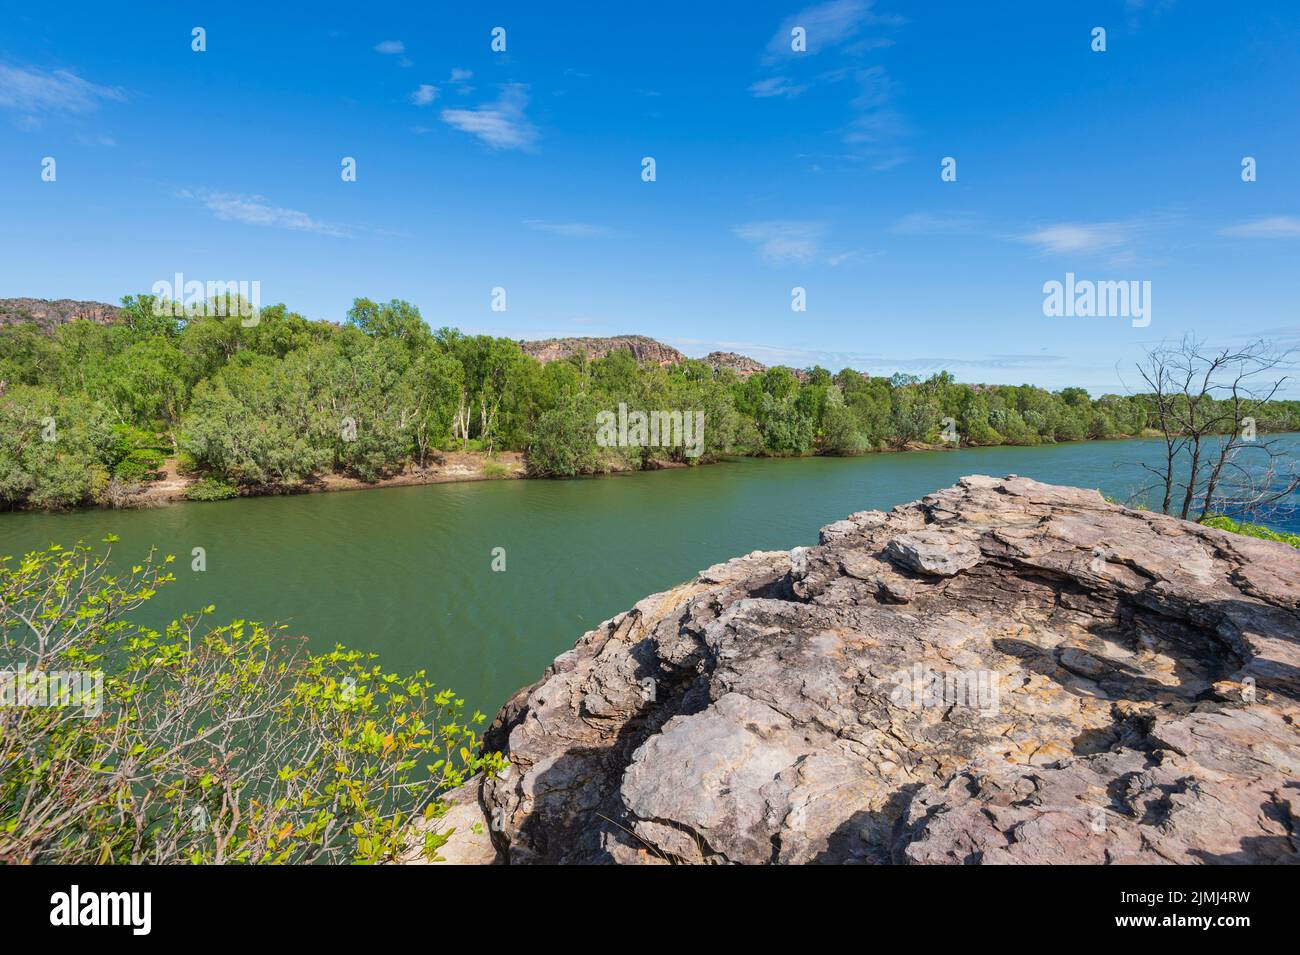 Vue panoramique sur la rivière Alligator est, à la frontière du parc national de Kakadu et de la terre d'Arnhem, territoire du Nord, Australie Banque D'Images